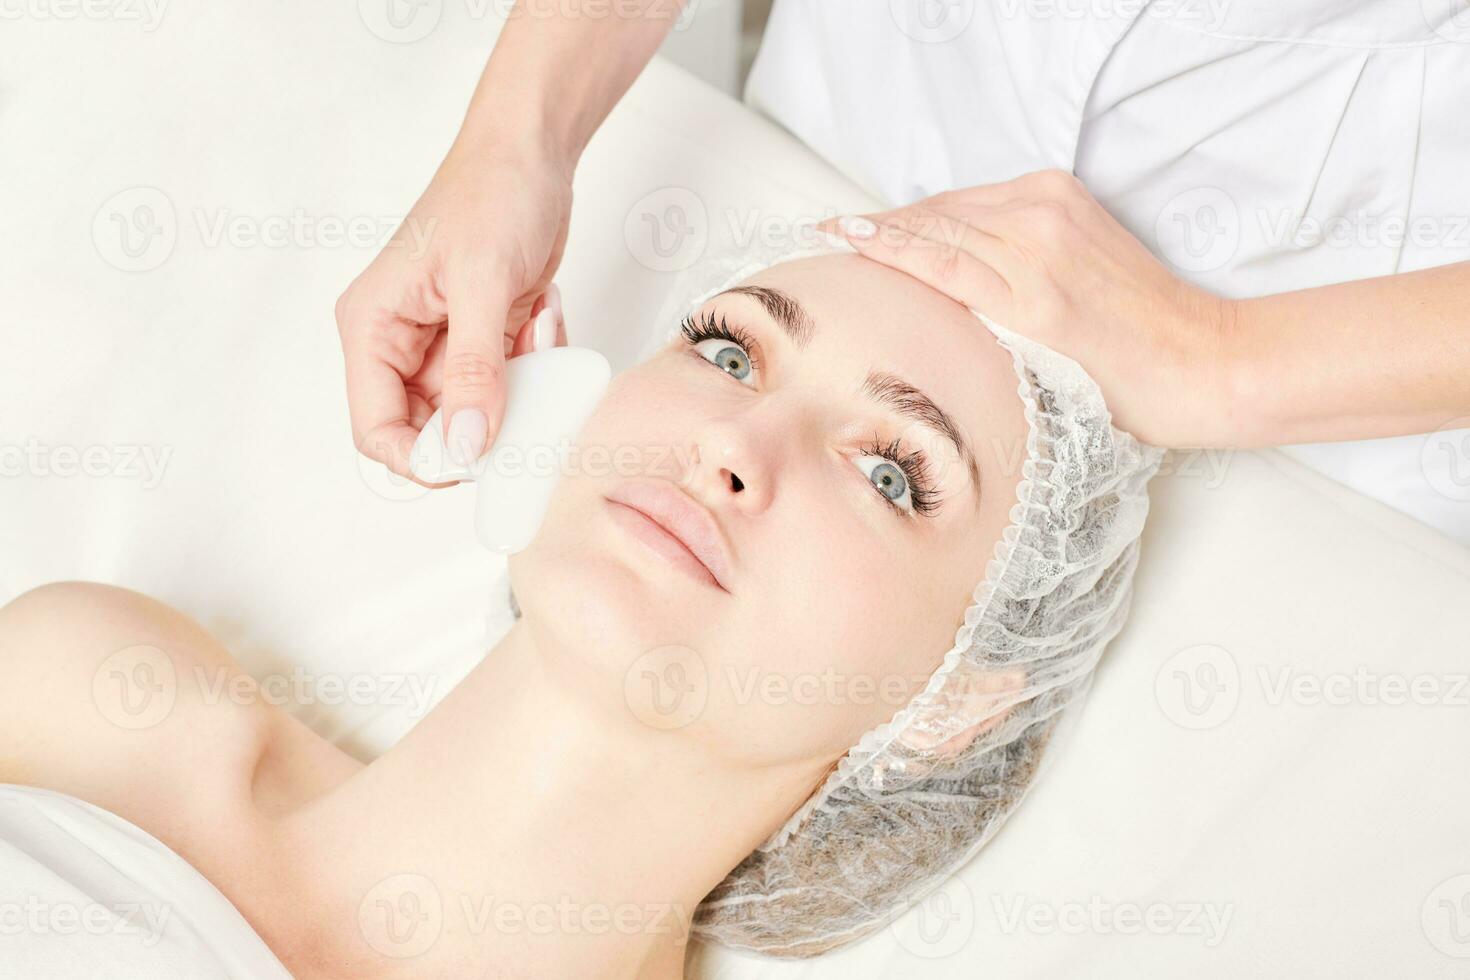 schoonheidsspecialist maken gelaats massage met gua sha steen van vrouw gezicht huid voor lymfatisch afvoer foto